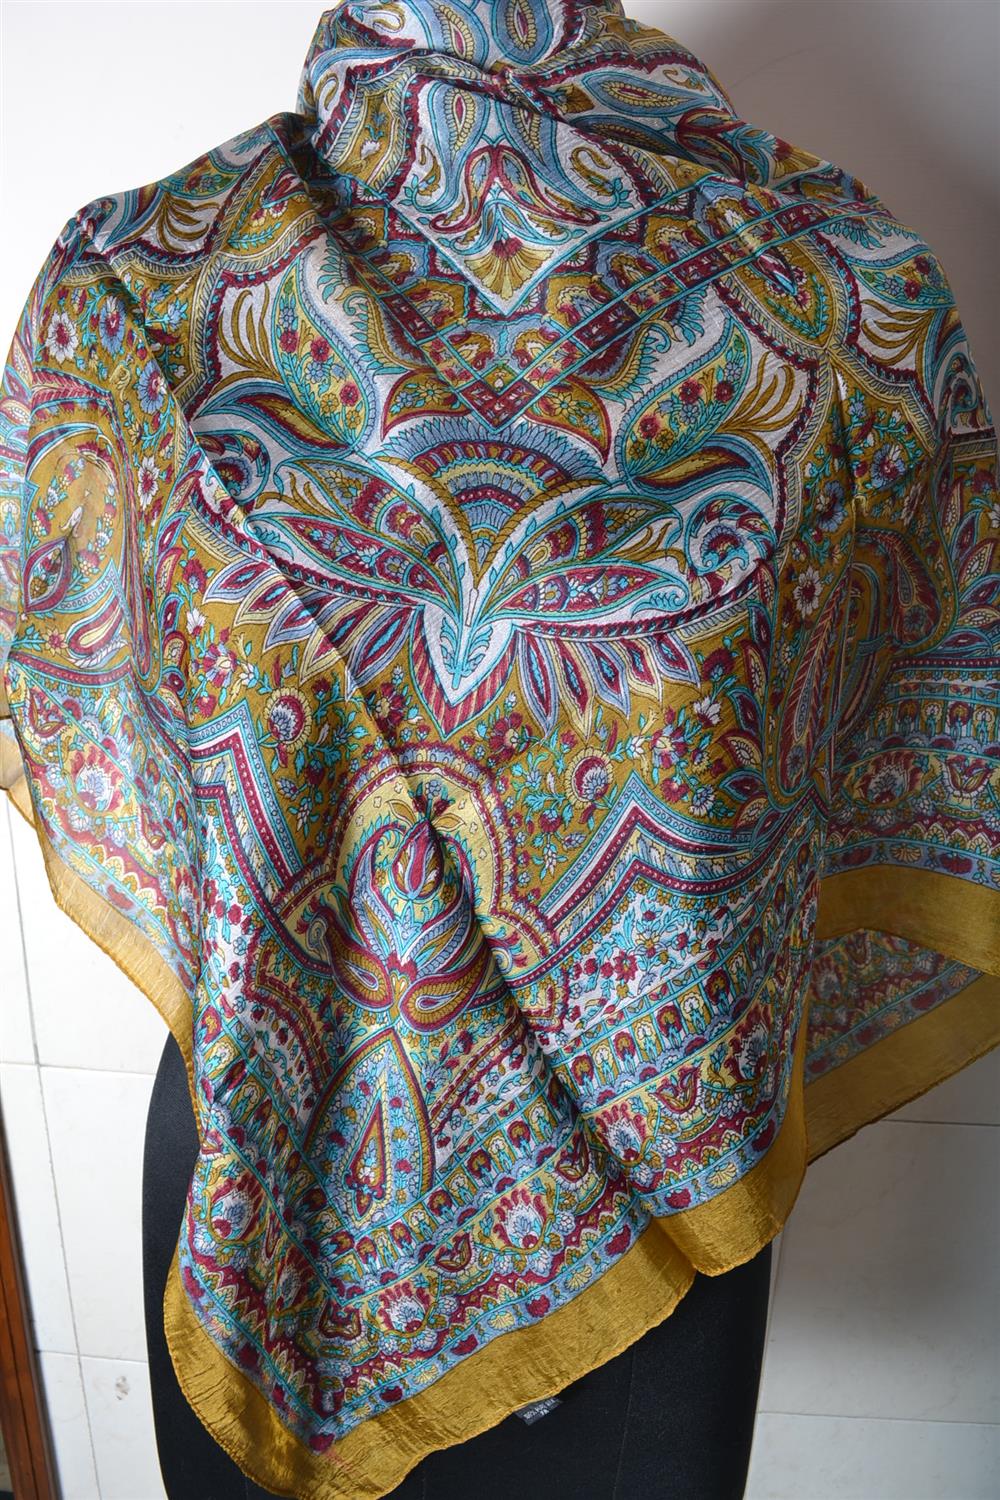 Printed Silk Square Pashmina Scarves | Bandhanas | Pareos